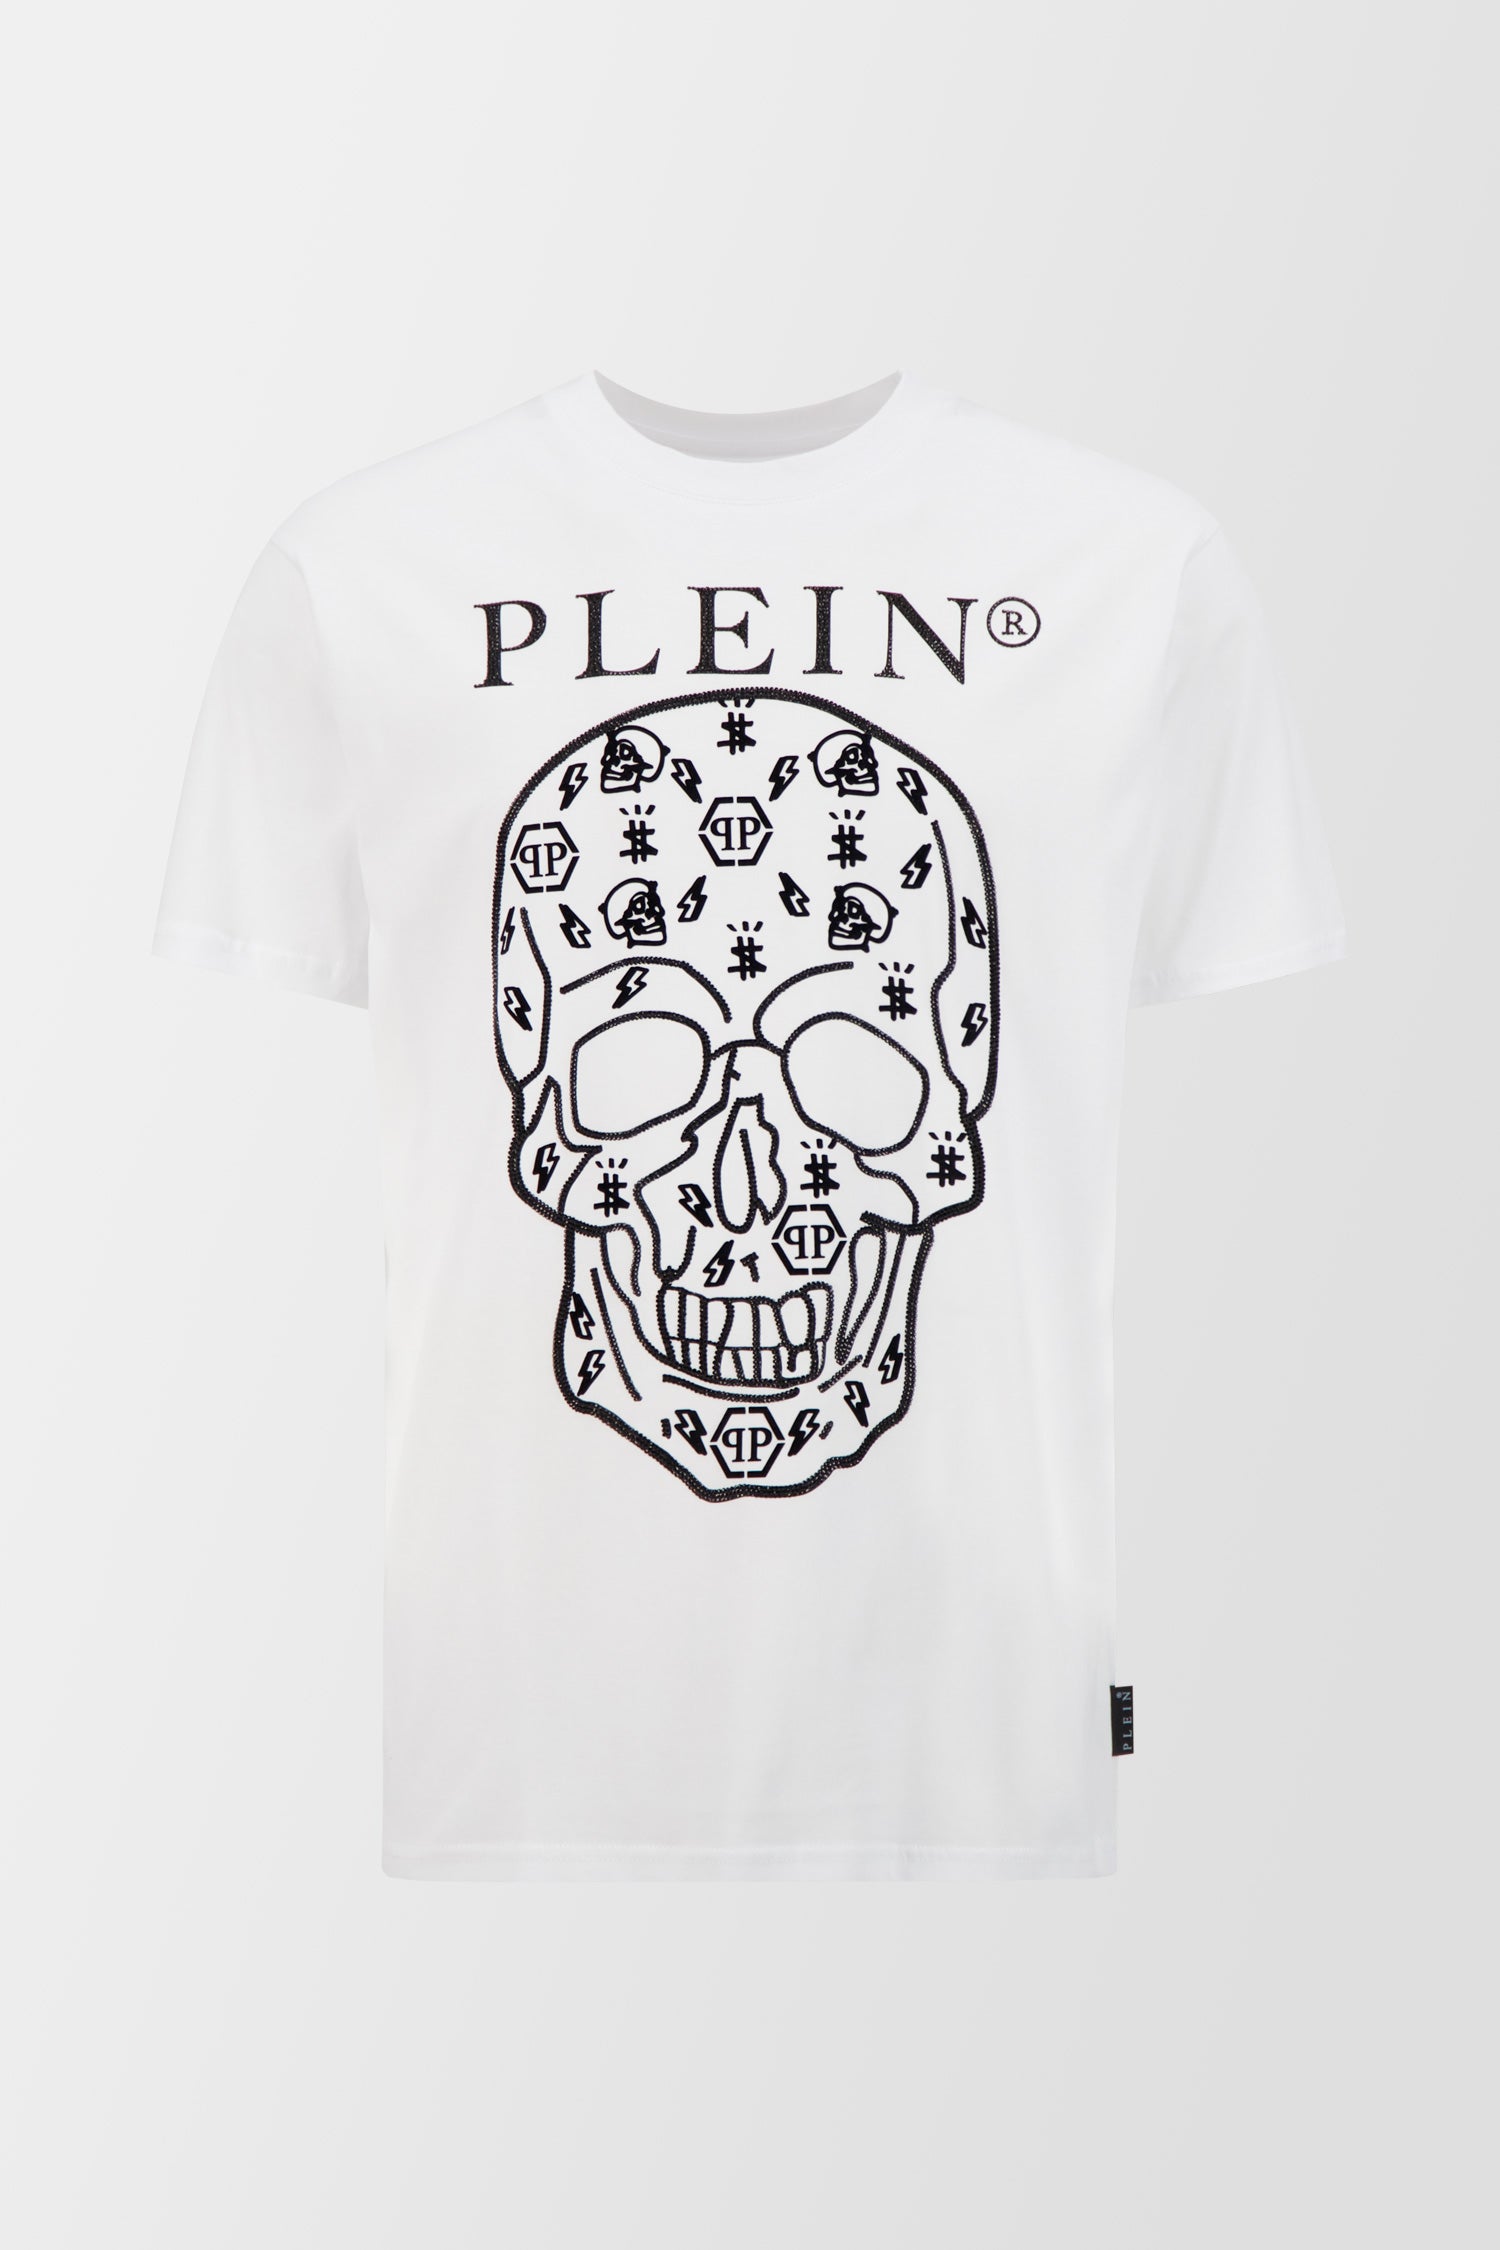 Philipp Plein White Round Neck SS Crystals T-Shirt